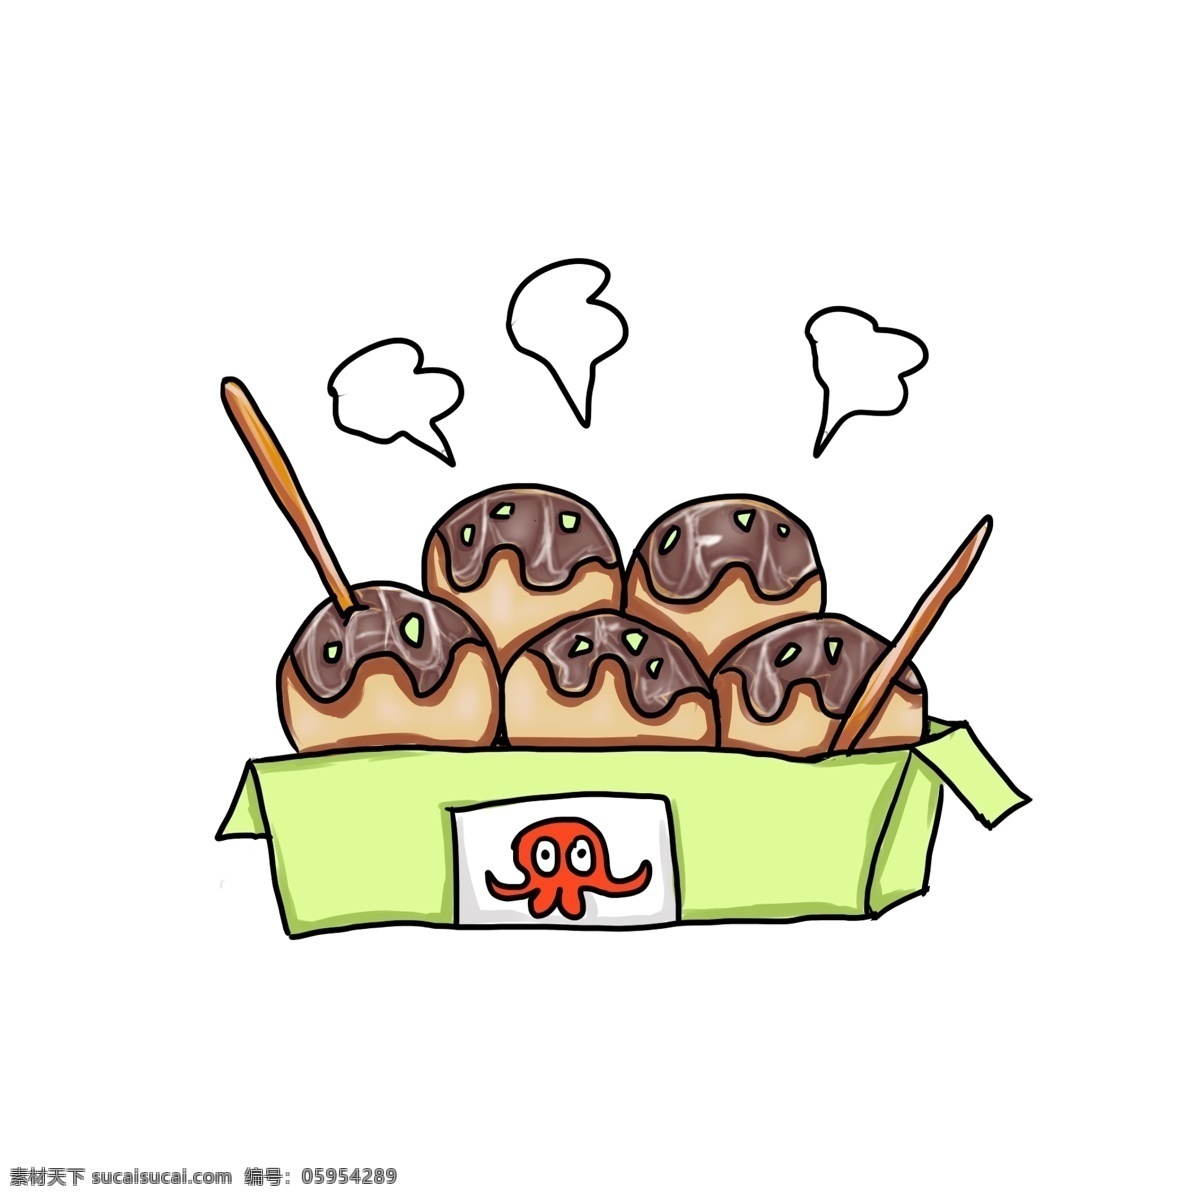 卡通 手绘 章鱼 小 丸子 插画 章鱼丸子 食物 美食 海苔 高丽菜 酱汁 制作简单 口味独特 口感鲜嫩 卡通手绘